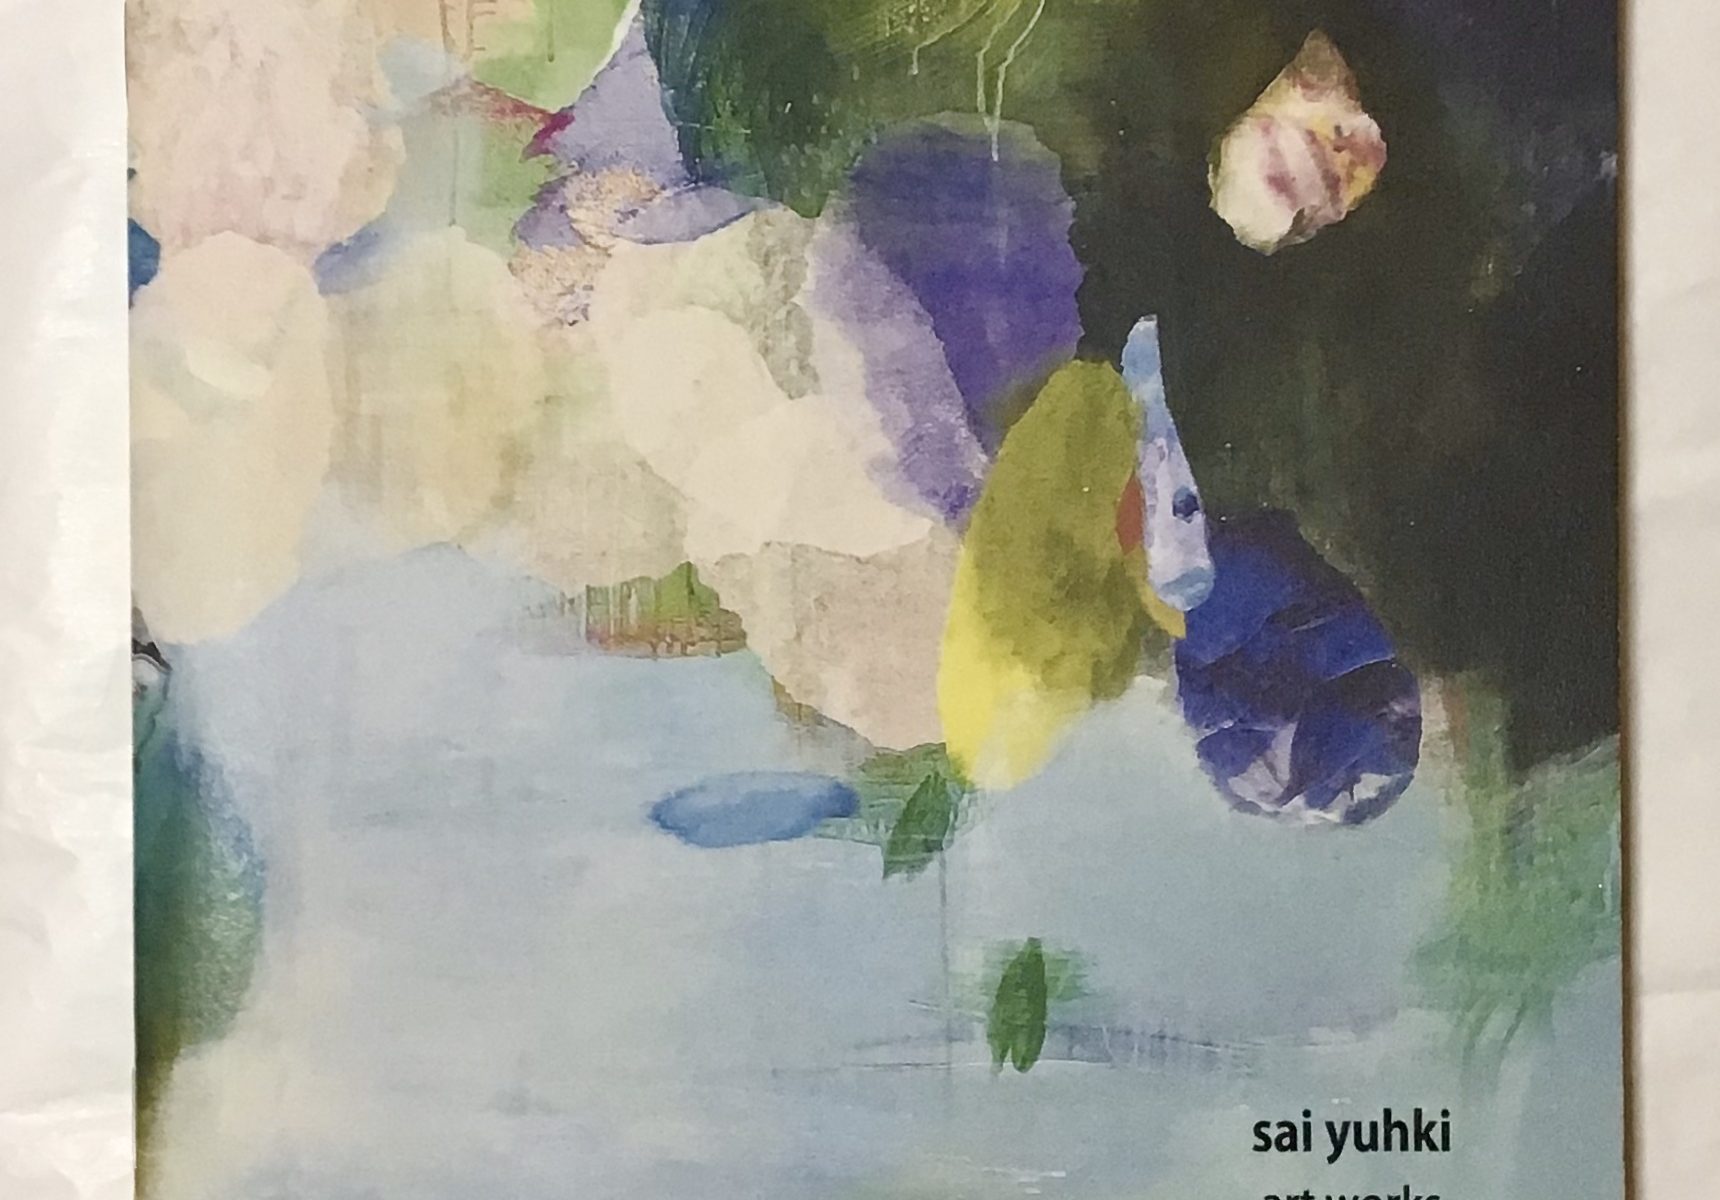 作品集 『sai yuhki art works Lyrics 2003-2015』